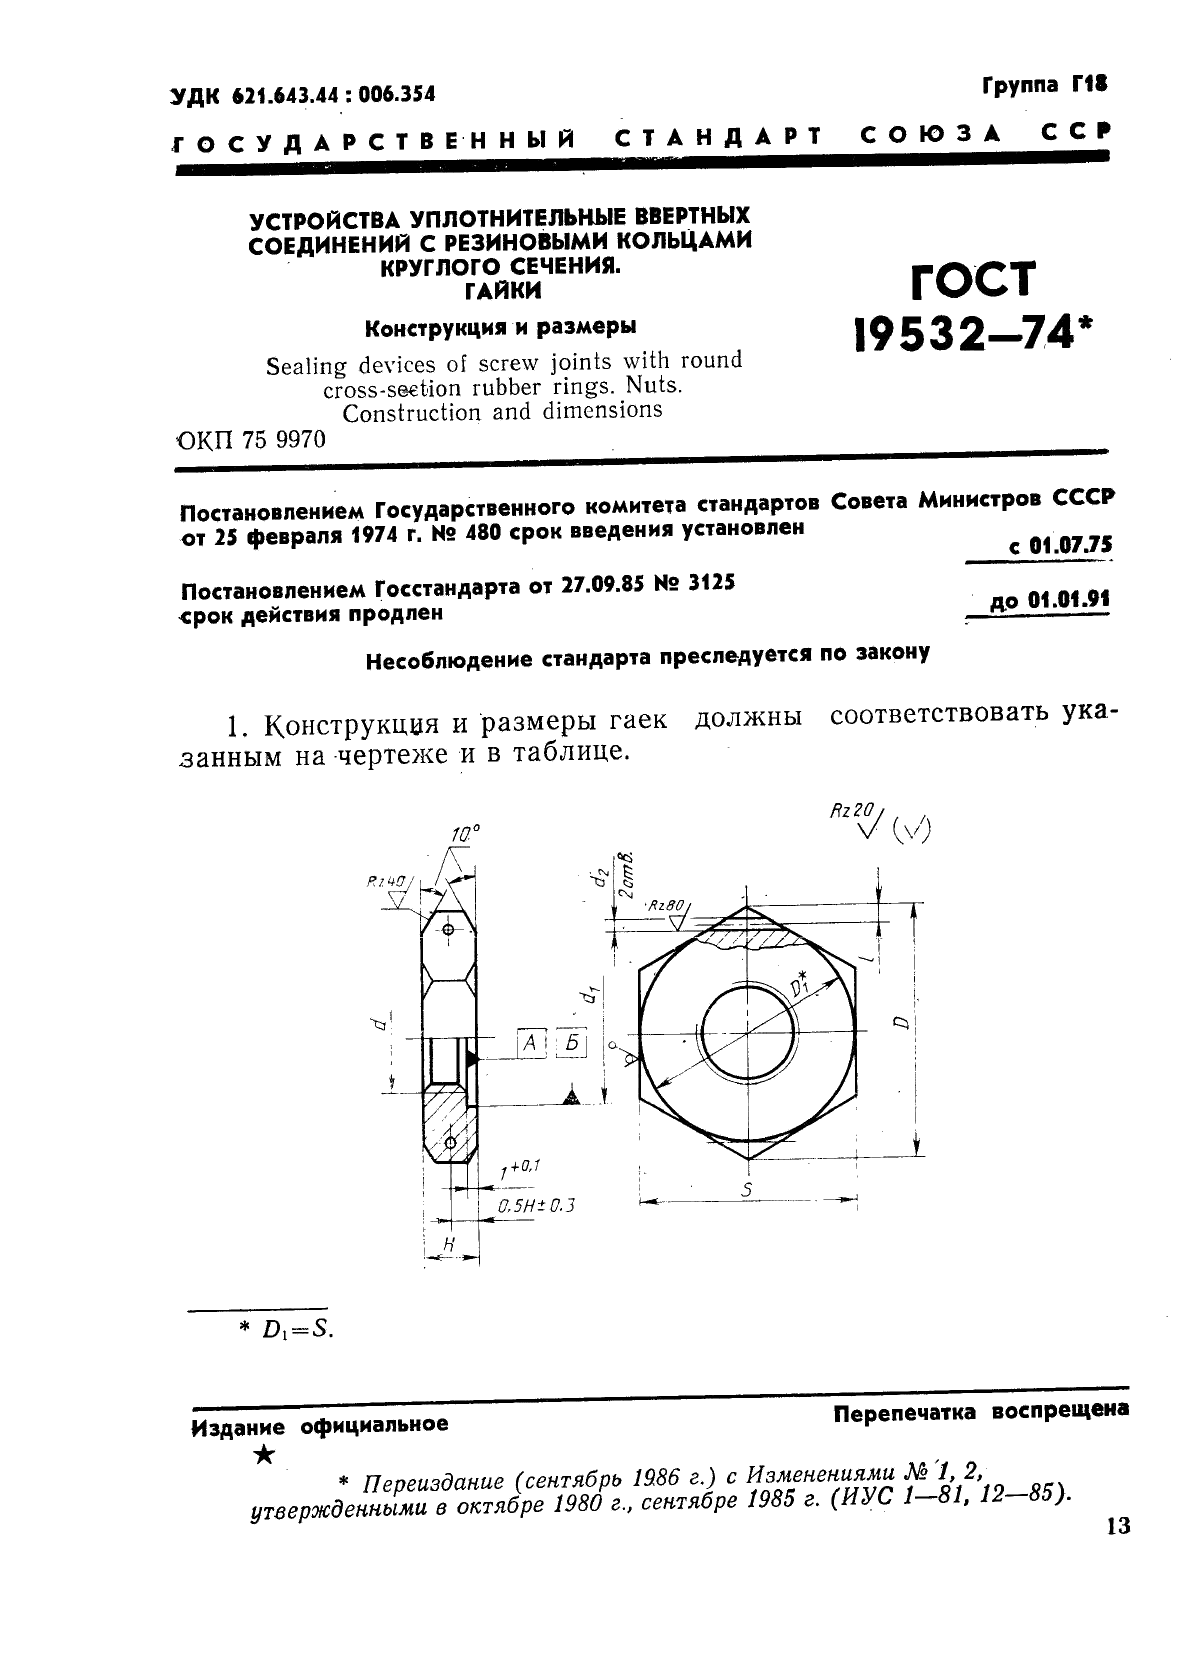 ГОСТ 19532-74 Устройства уплотнительные ввертных соединений с резиновыми кольцами круглого сечения. Гайки. Конструкция и размеры (фото 1 из 5)